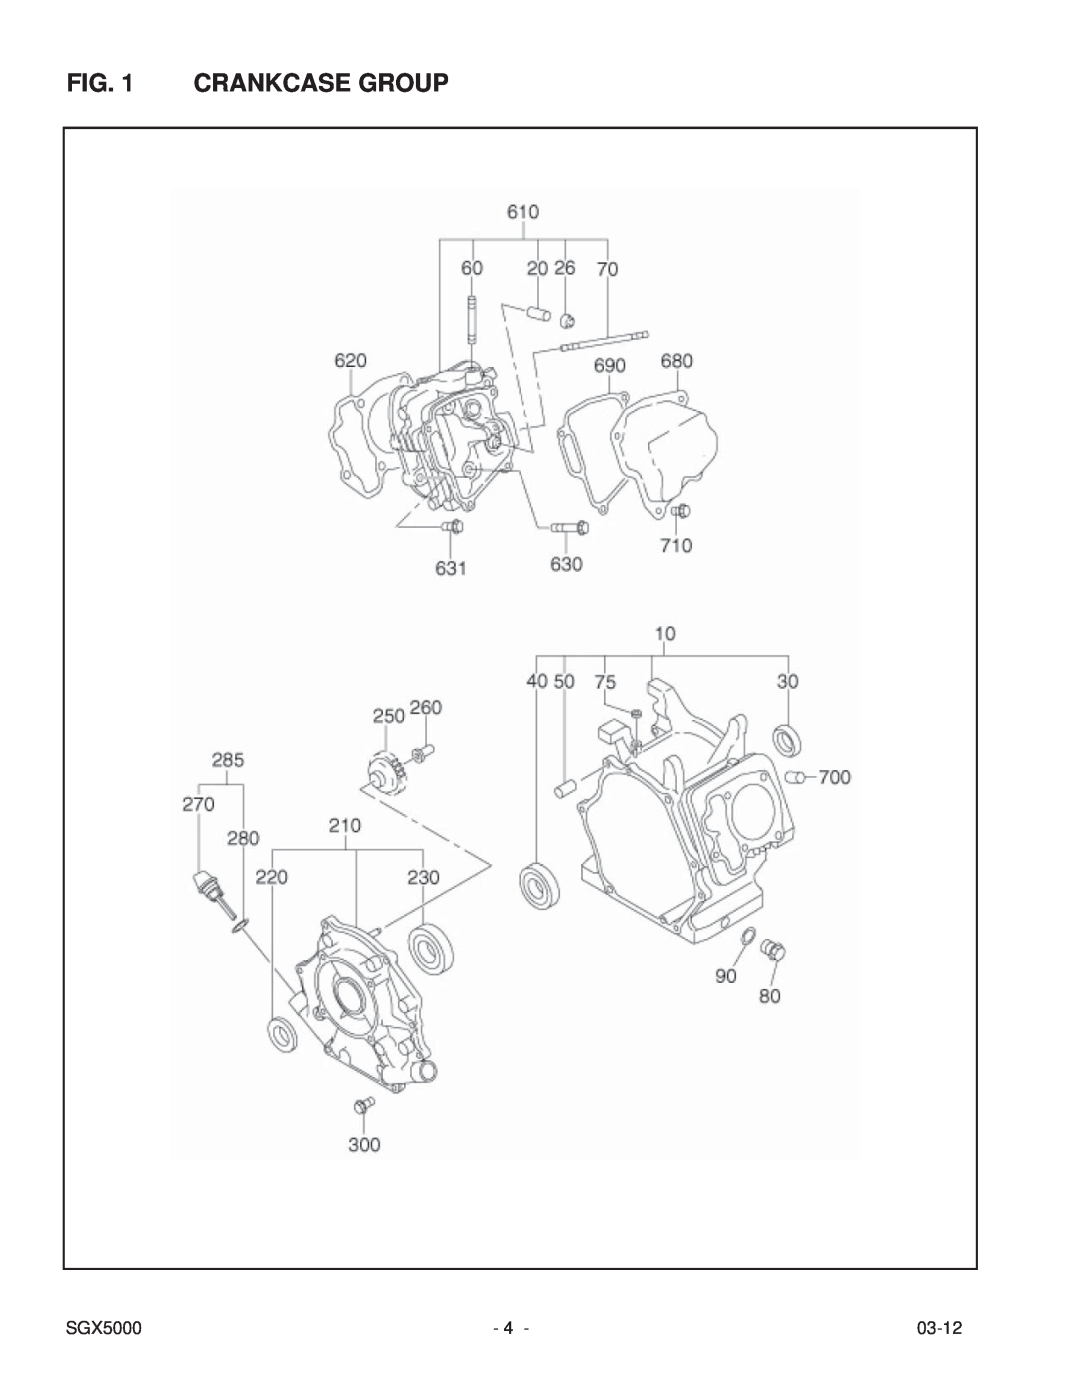 Subaru SGX5000 manual Crankcase Group, 03-12 